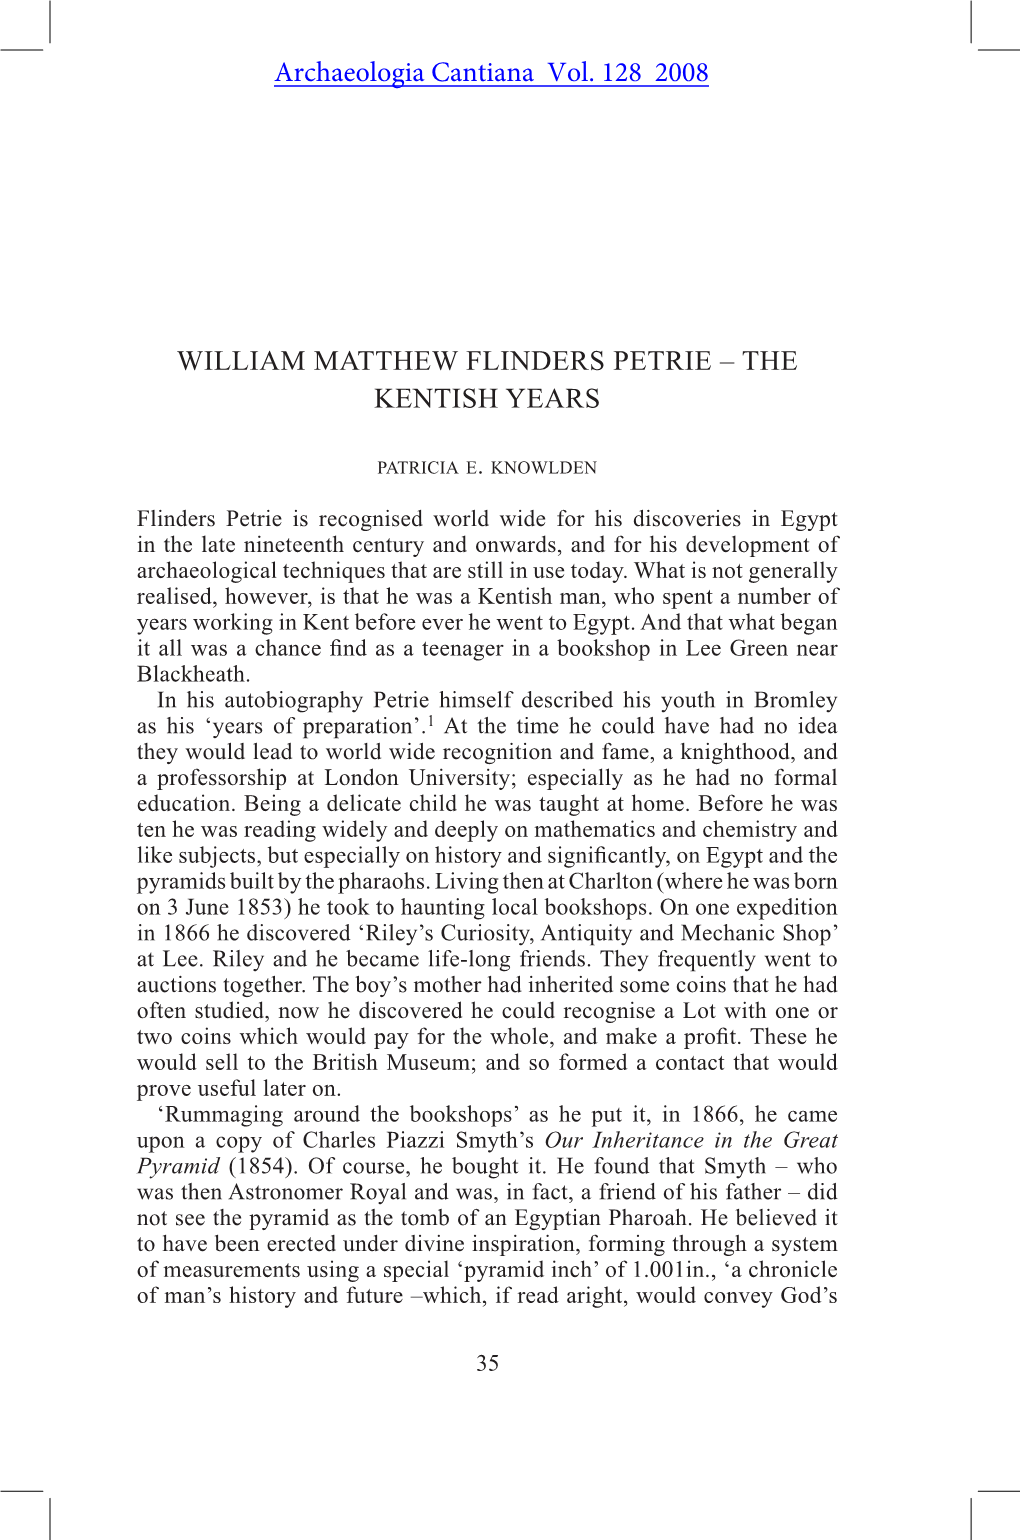 William Matthew FLINDERS PETRIE – the KENTISH YEARS